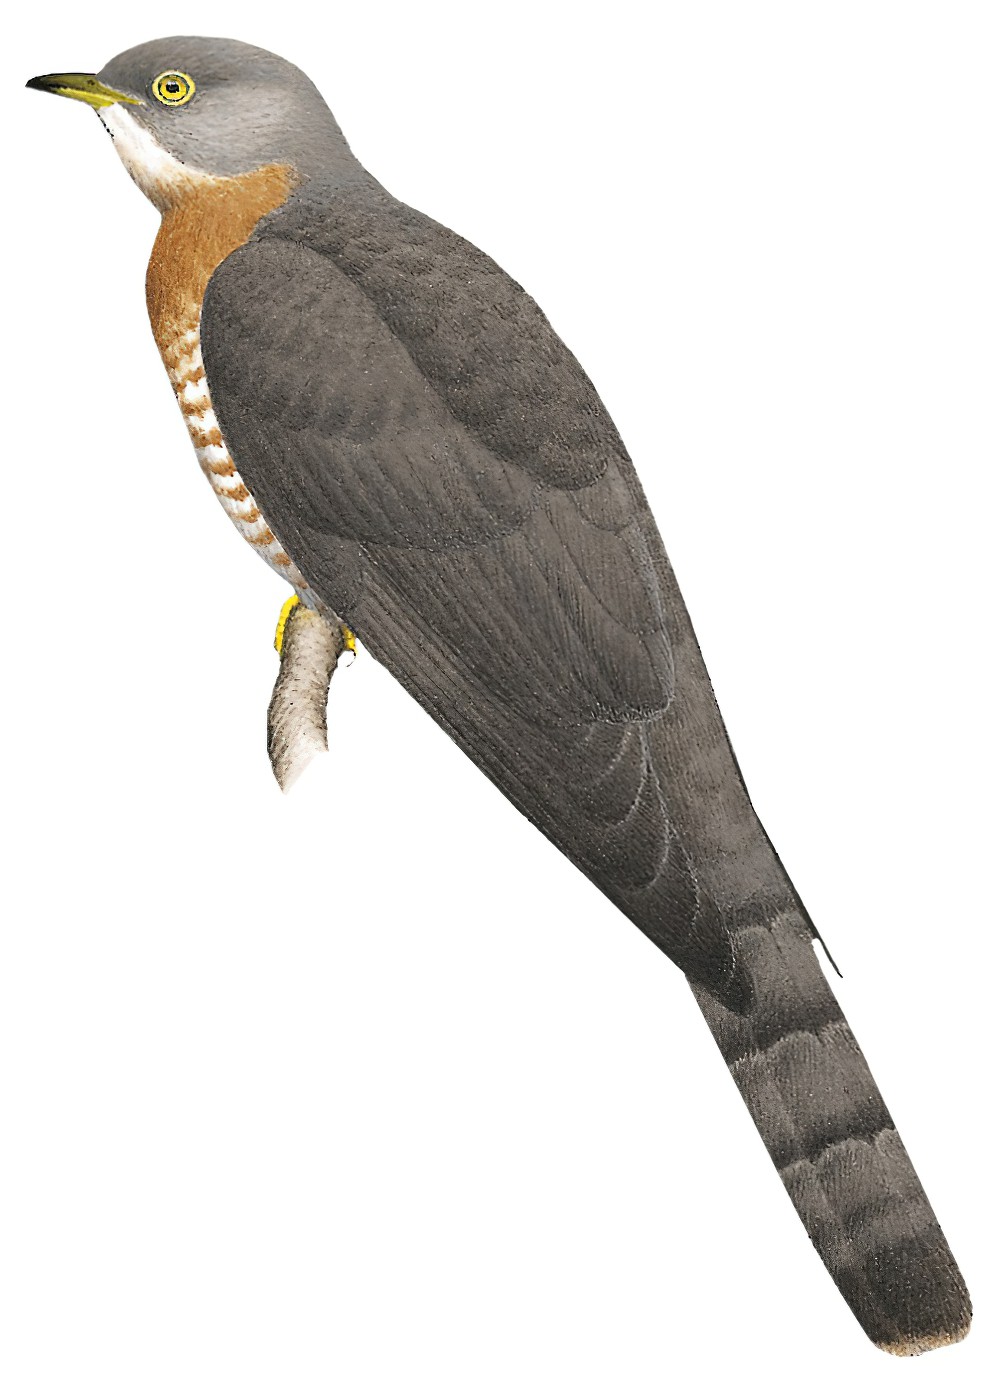 Common Hawk-Cuckoo / Hierococcyx varius